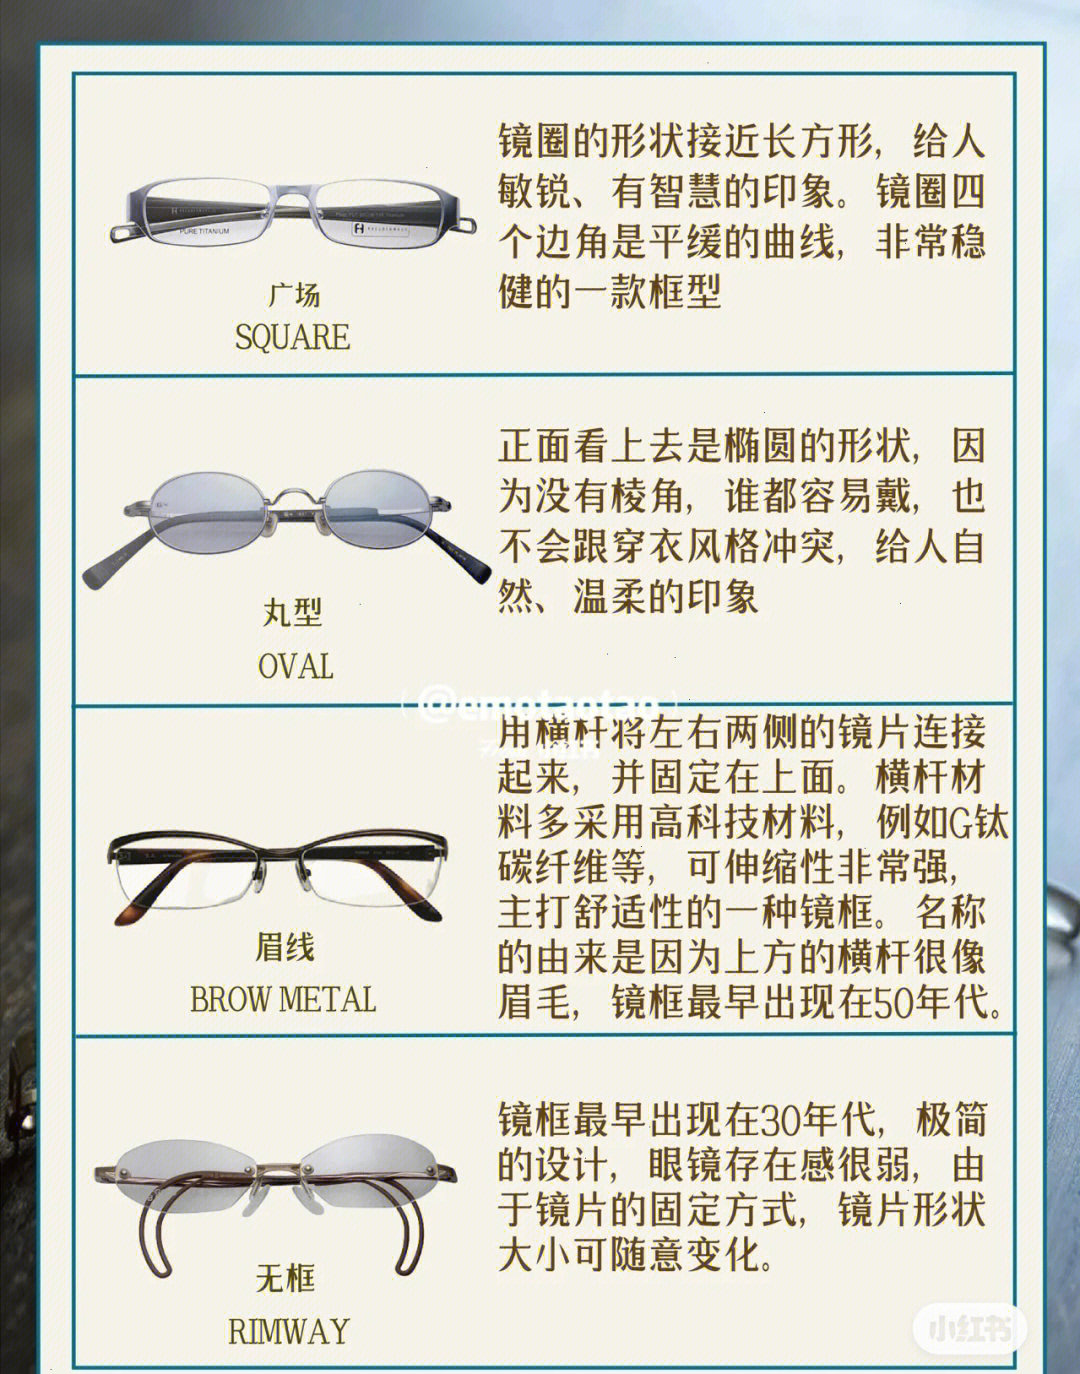 眼镜发展到今天 能设计出的框型大部分都是这12种框型的变化或者结合